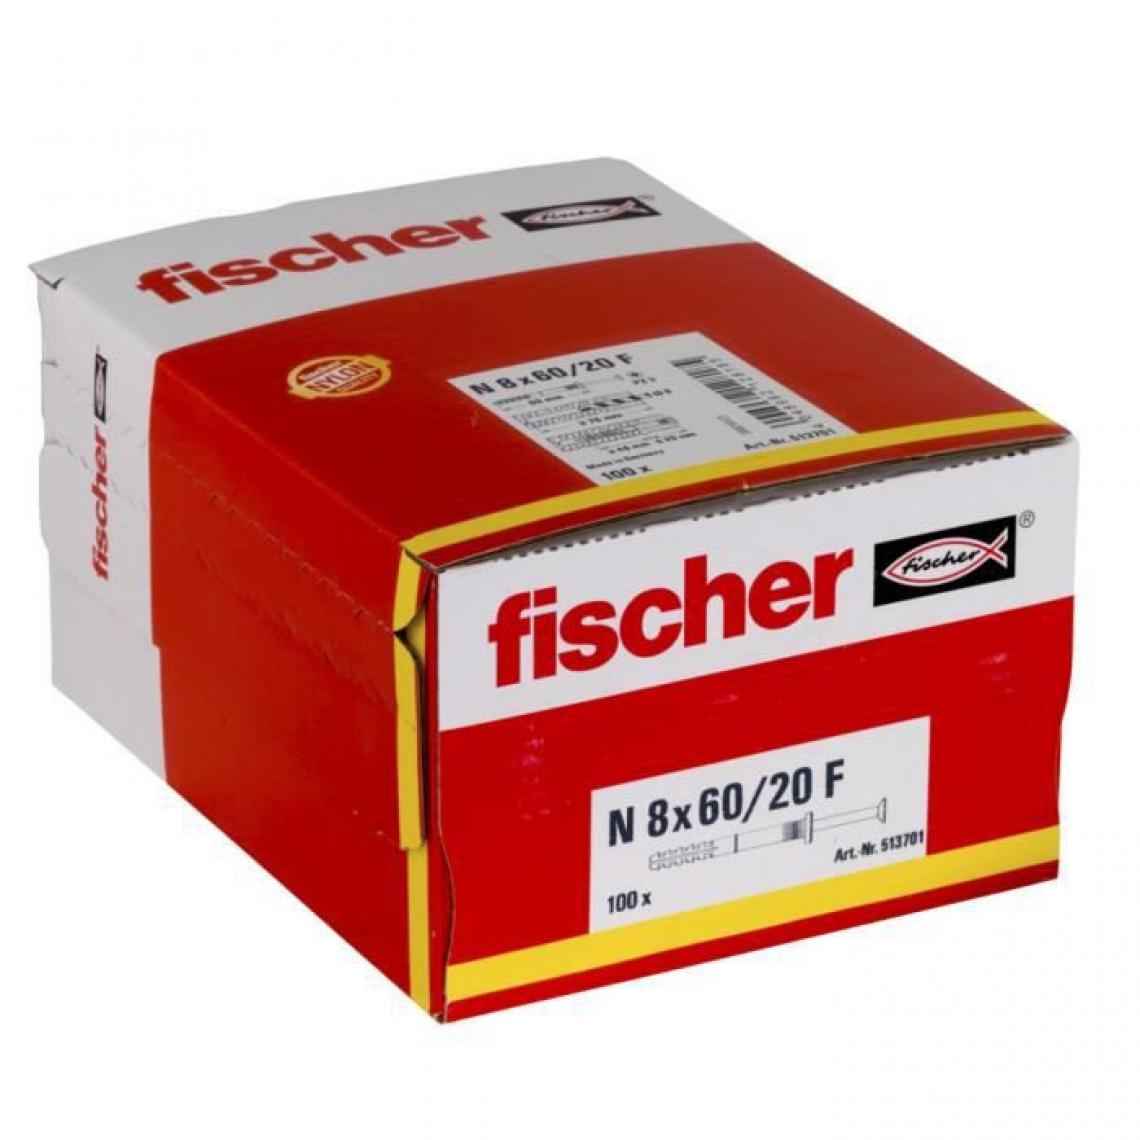 Fischer - FISCHER - Cheville clou NF 8x60/20 avec collerette épaisse et clou tete fraisée - Boîte de 100 - Cheville